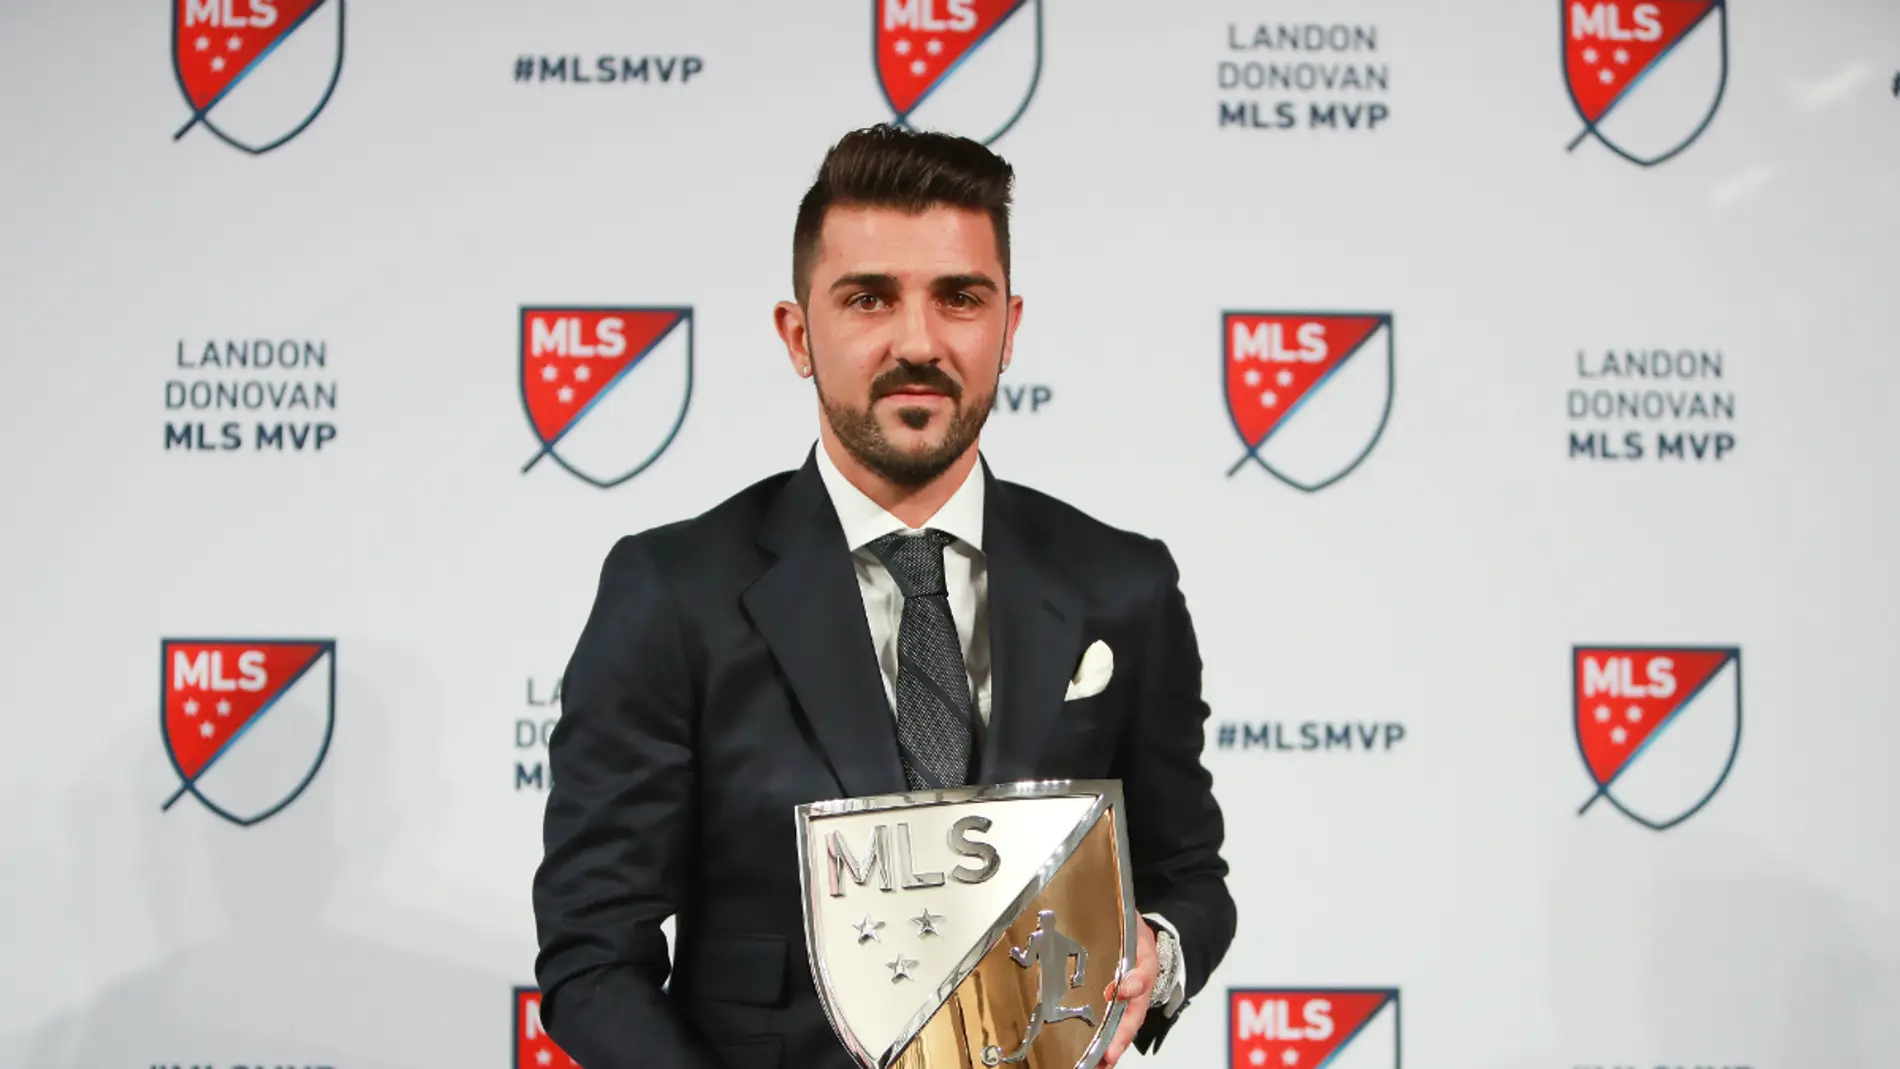 Villa, con el trofeo de Mejor Jugador de la MLS